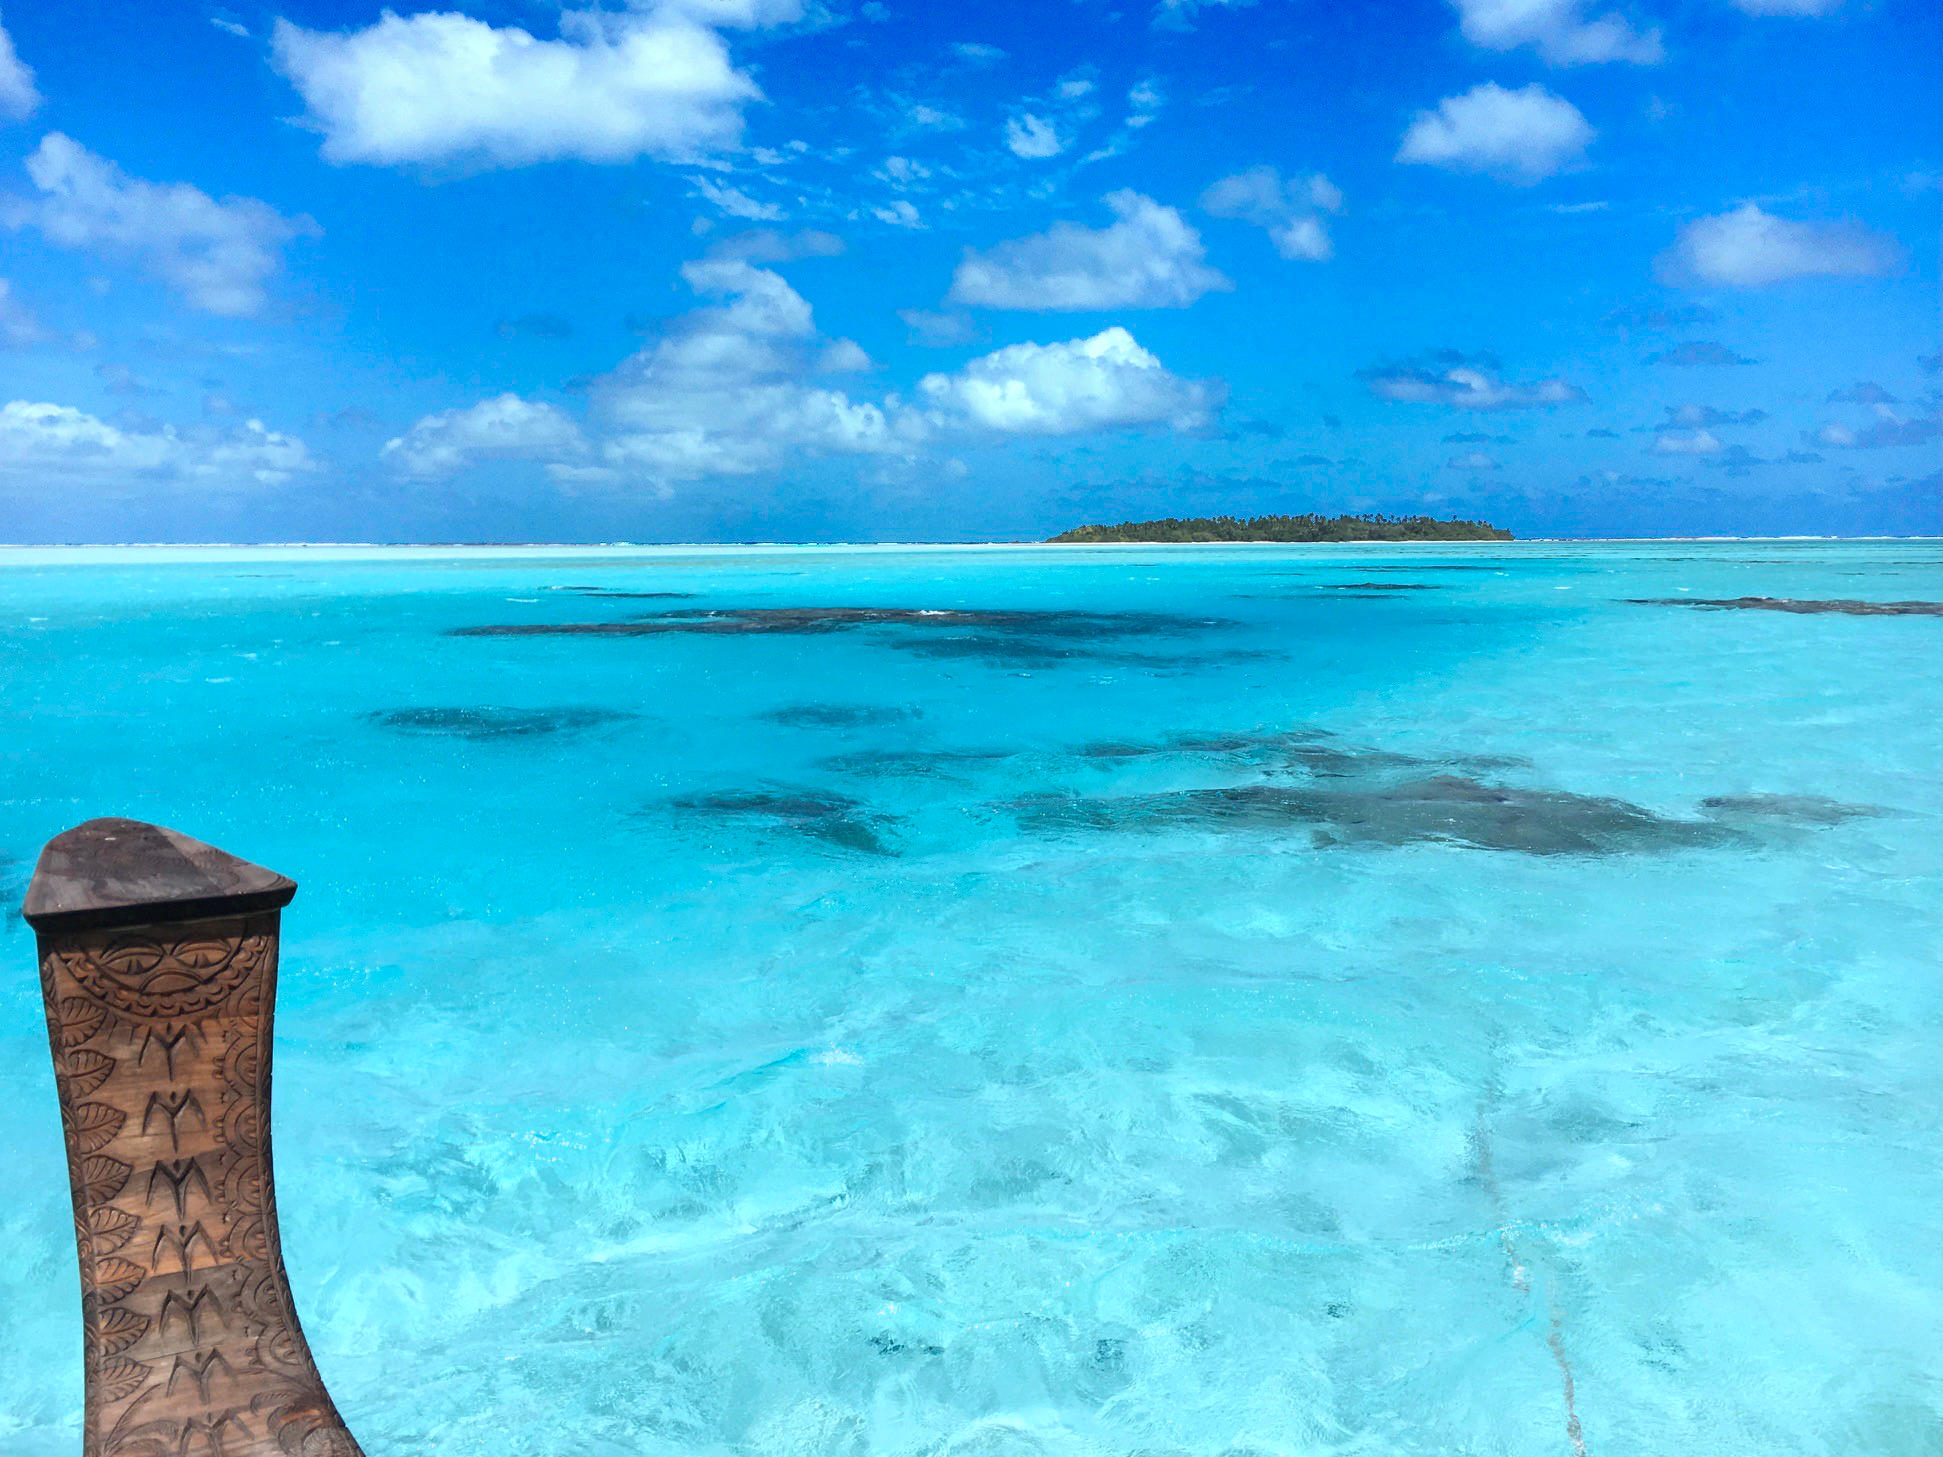 Das Bild zeigt die Aussicht von einem Boot auf das klare, blaue Wasser vor der Insel Aitutaki. Im Hintergrund ist eine Insel mit einem Palmenwald zu sehen.